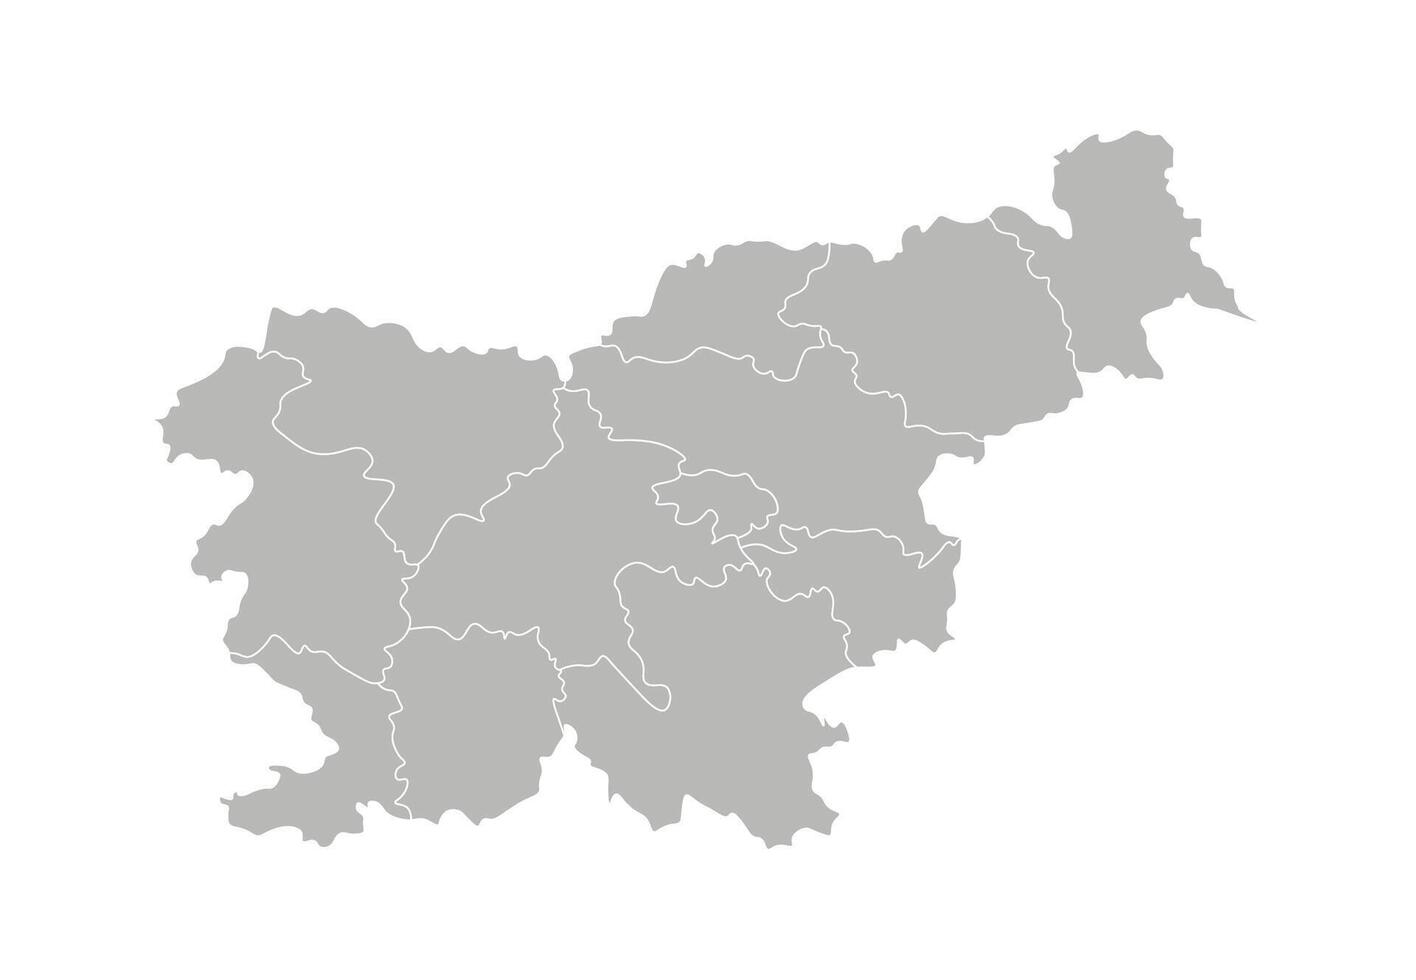 vetor isolado ilustração do simplificado administrativo mapa do eslovênia. fronteiras do a províncias, regiões. cinzento silhuetas. branco contorno.